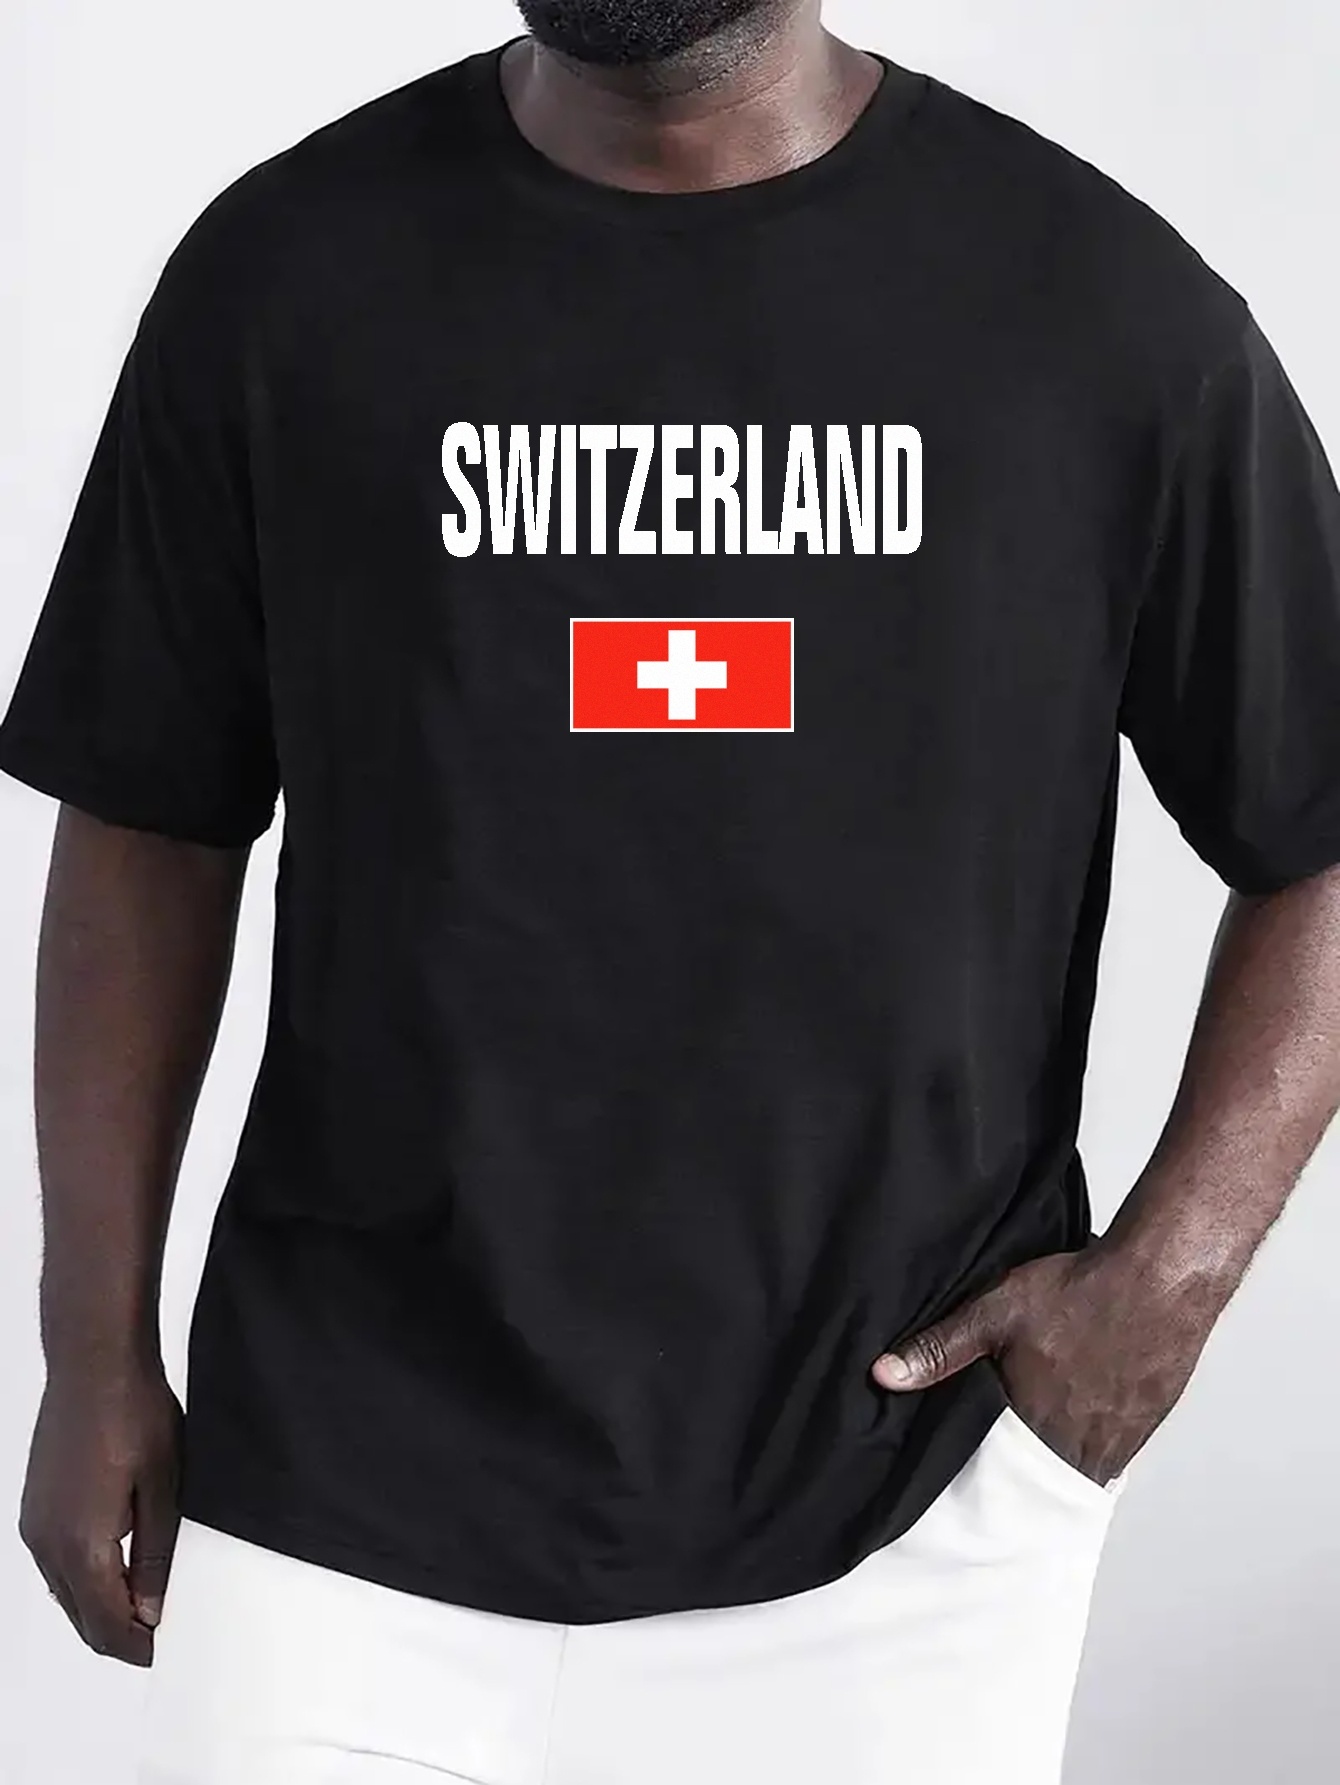 Switzerland Clothing - Temu